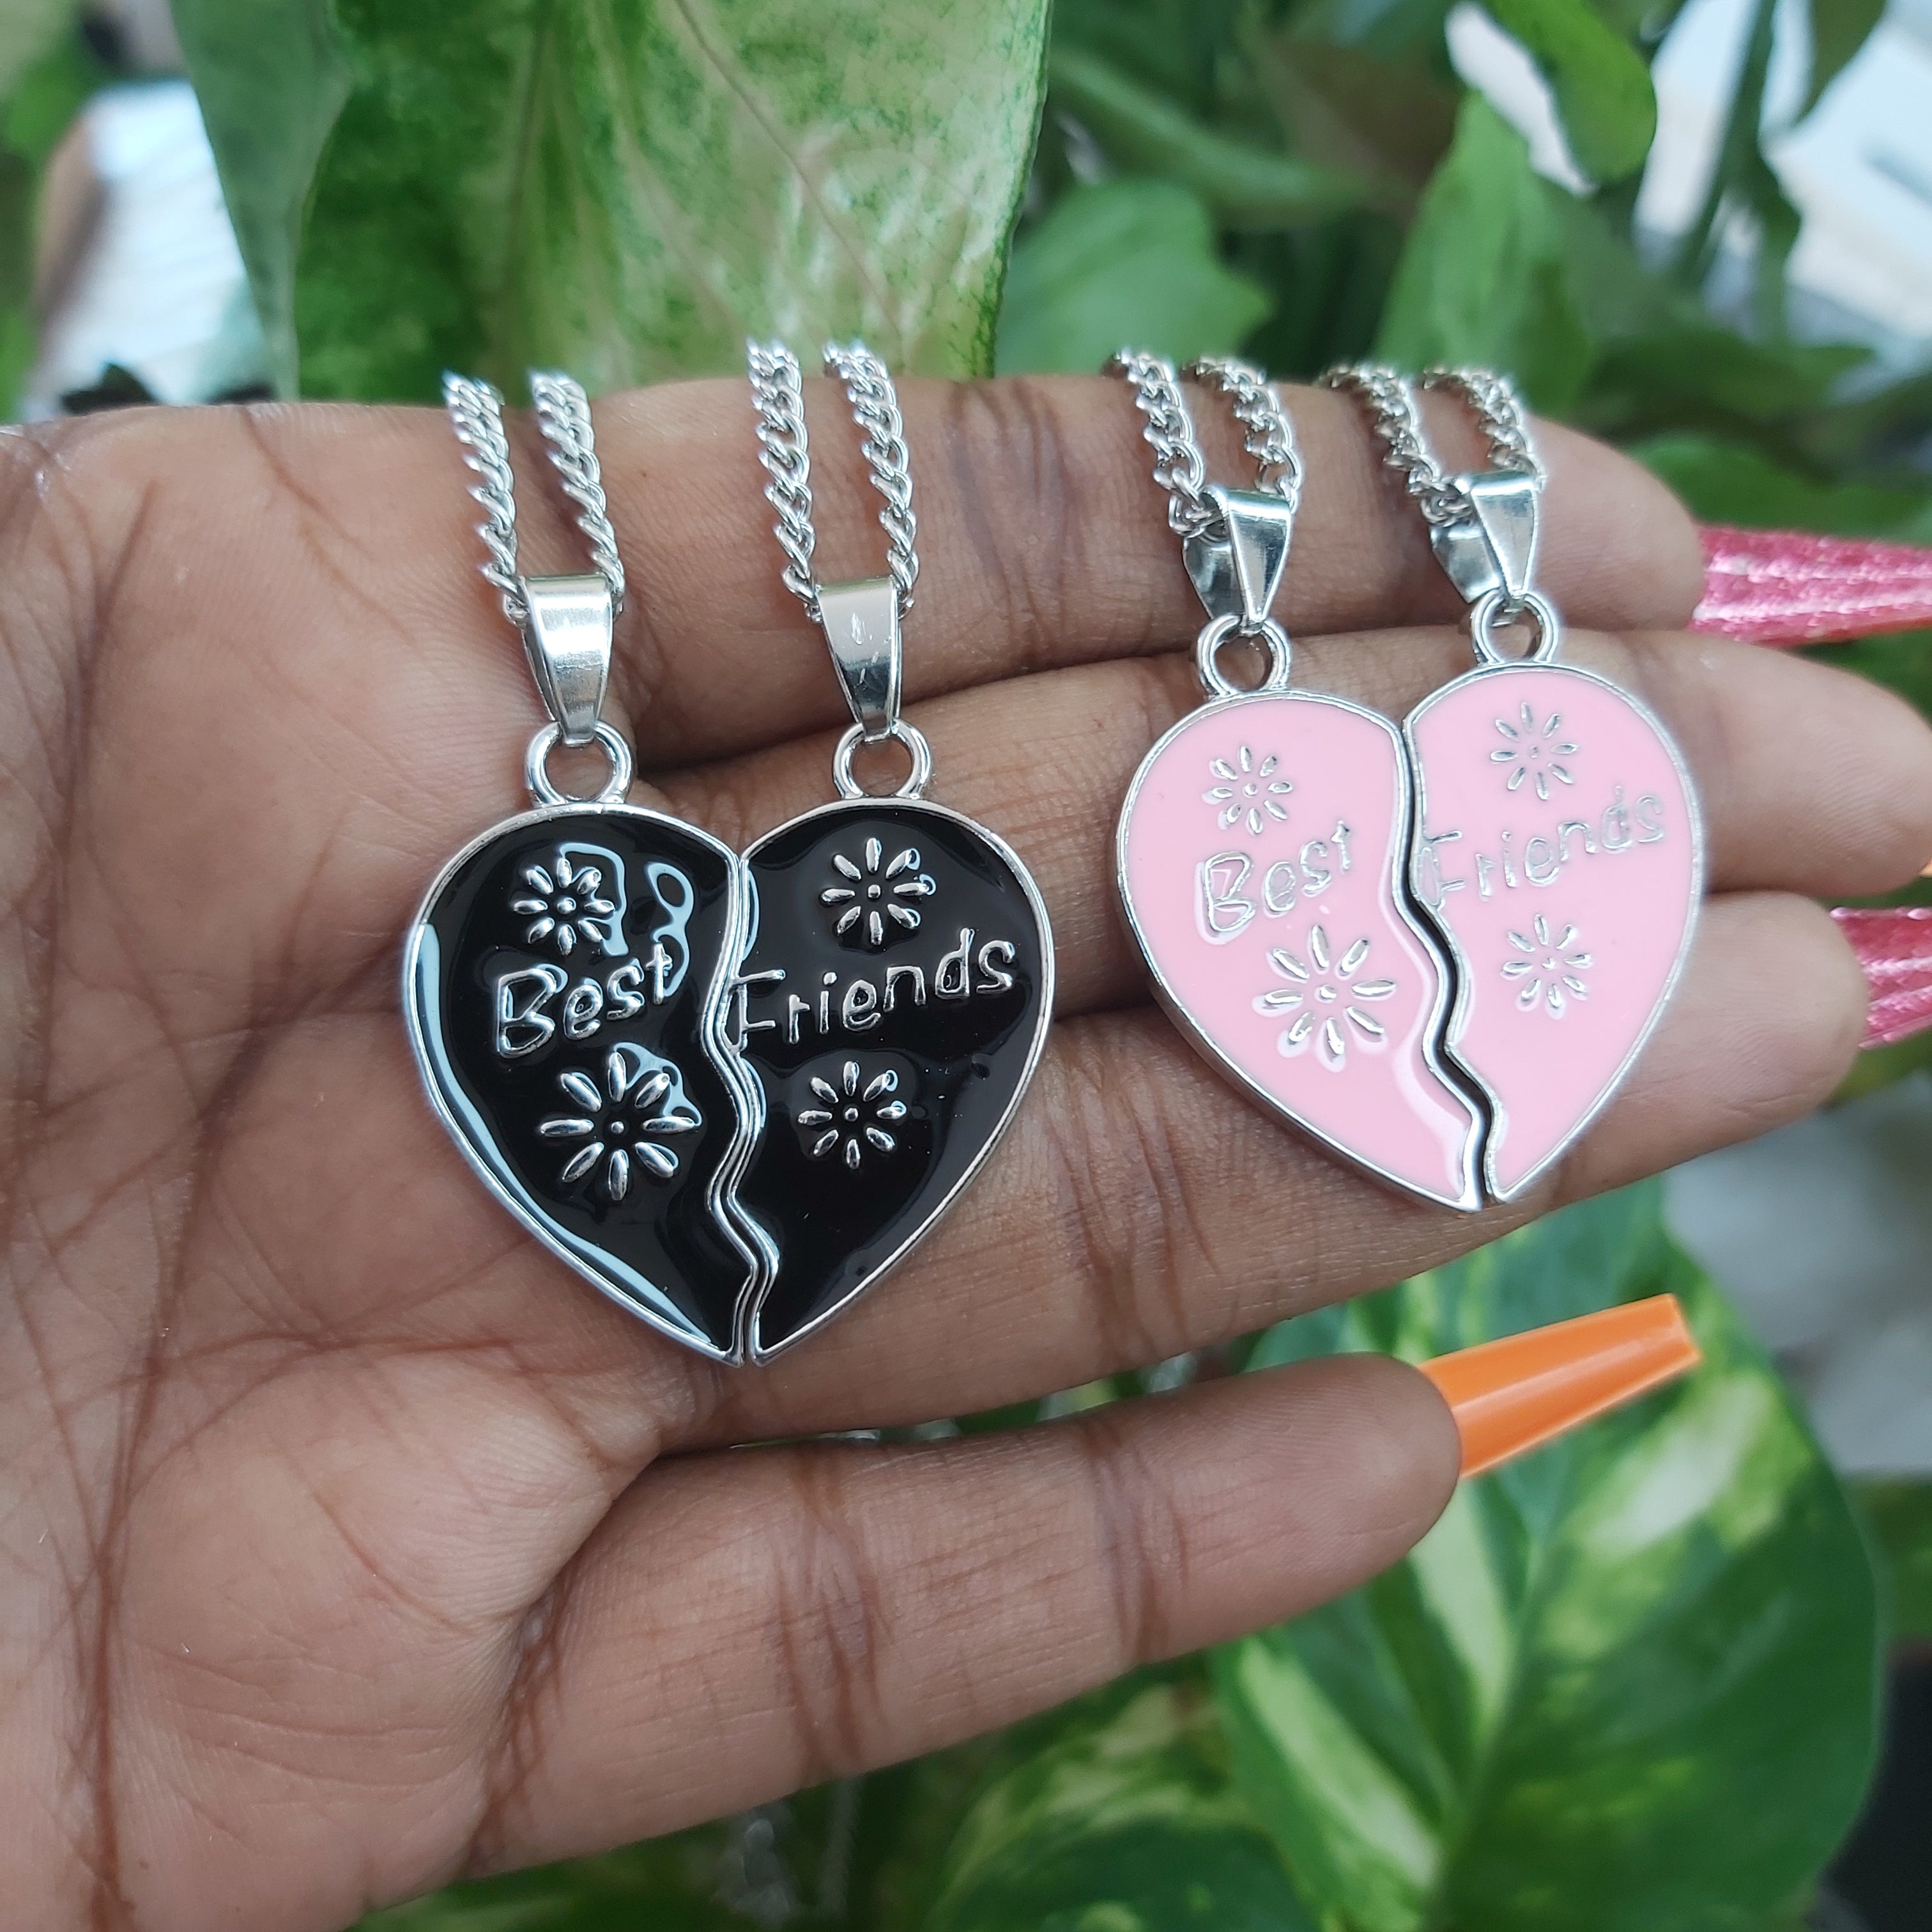 Best Friends / Besties Heart Fashion Necklaces